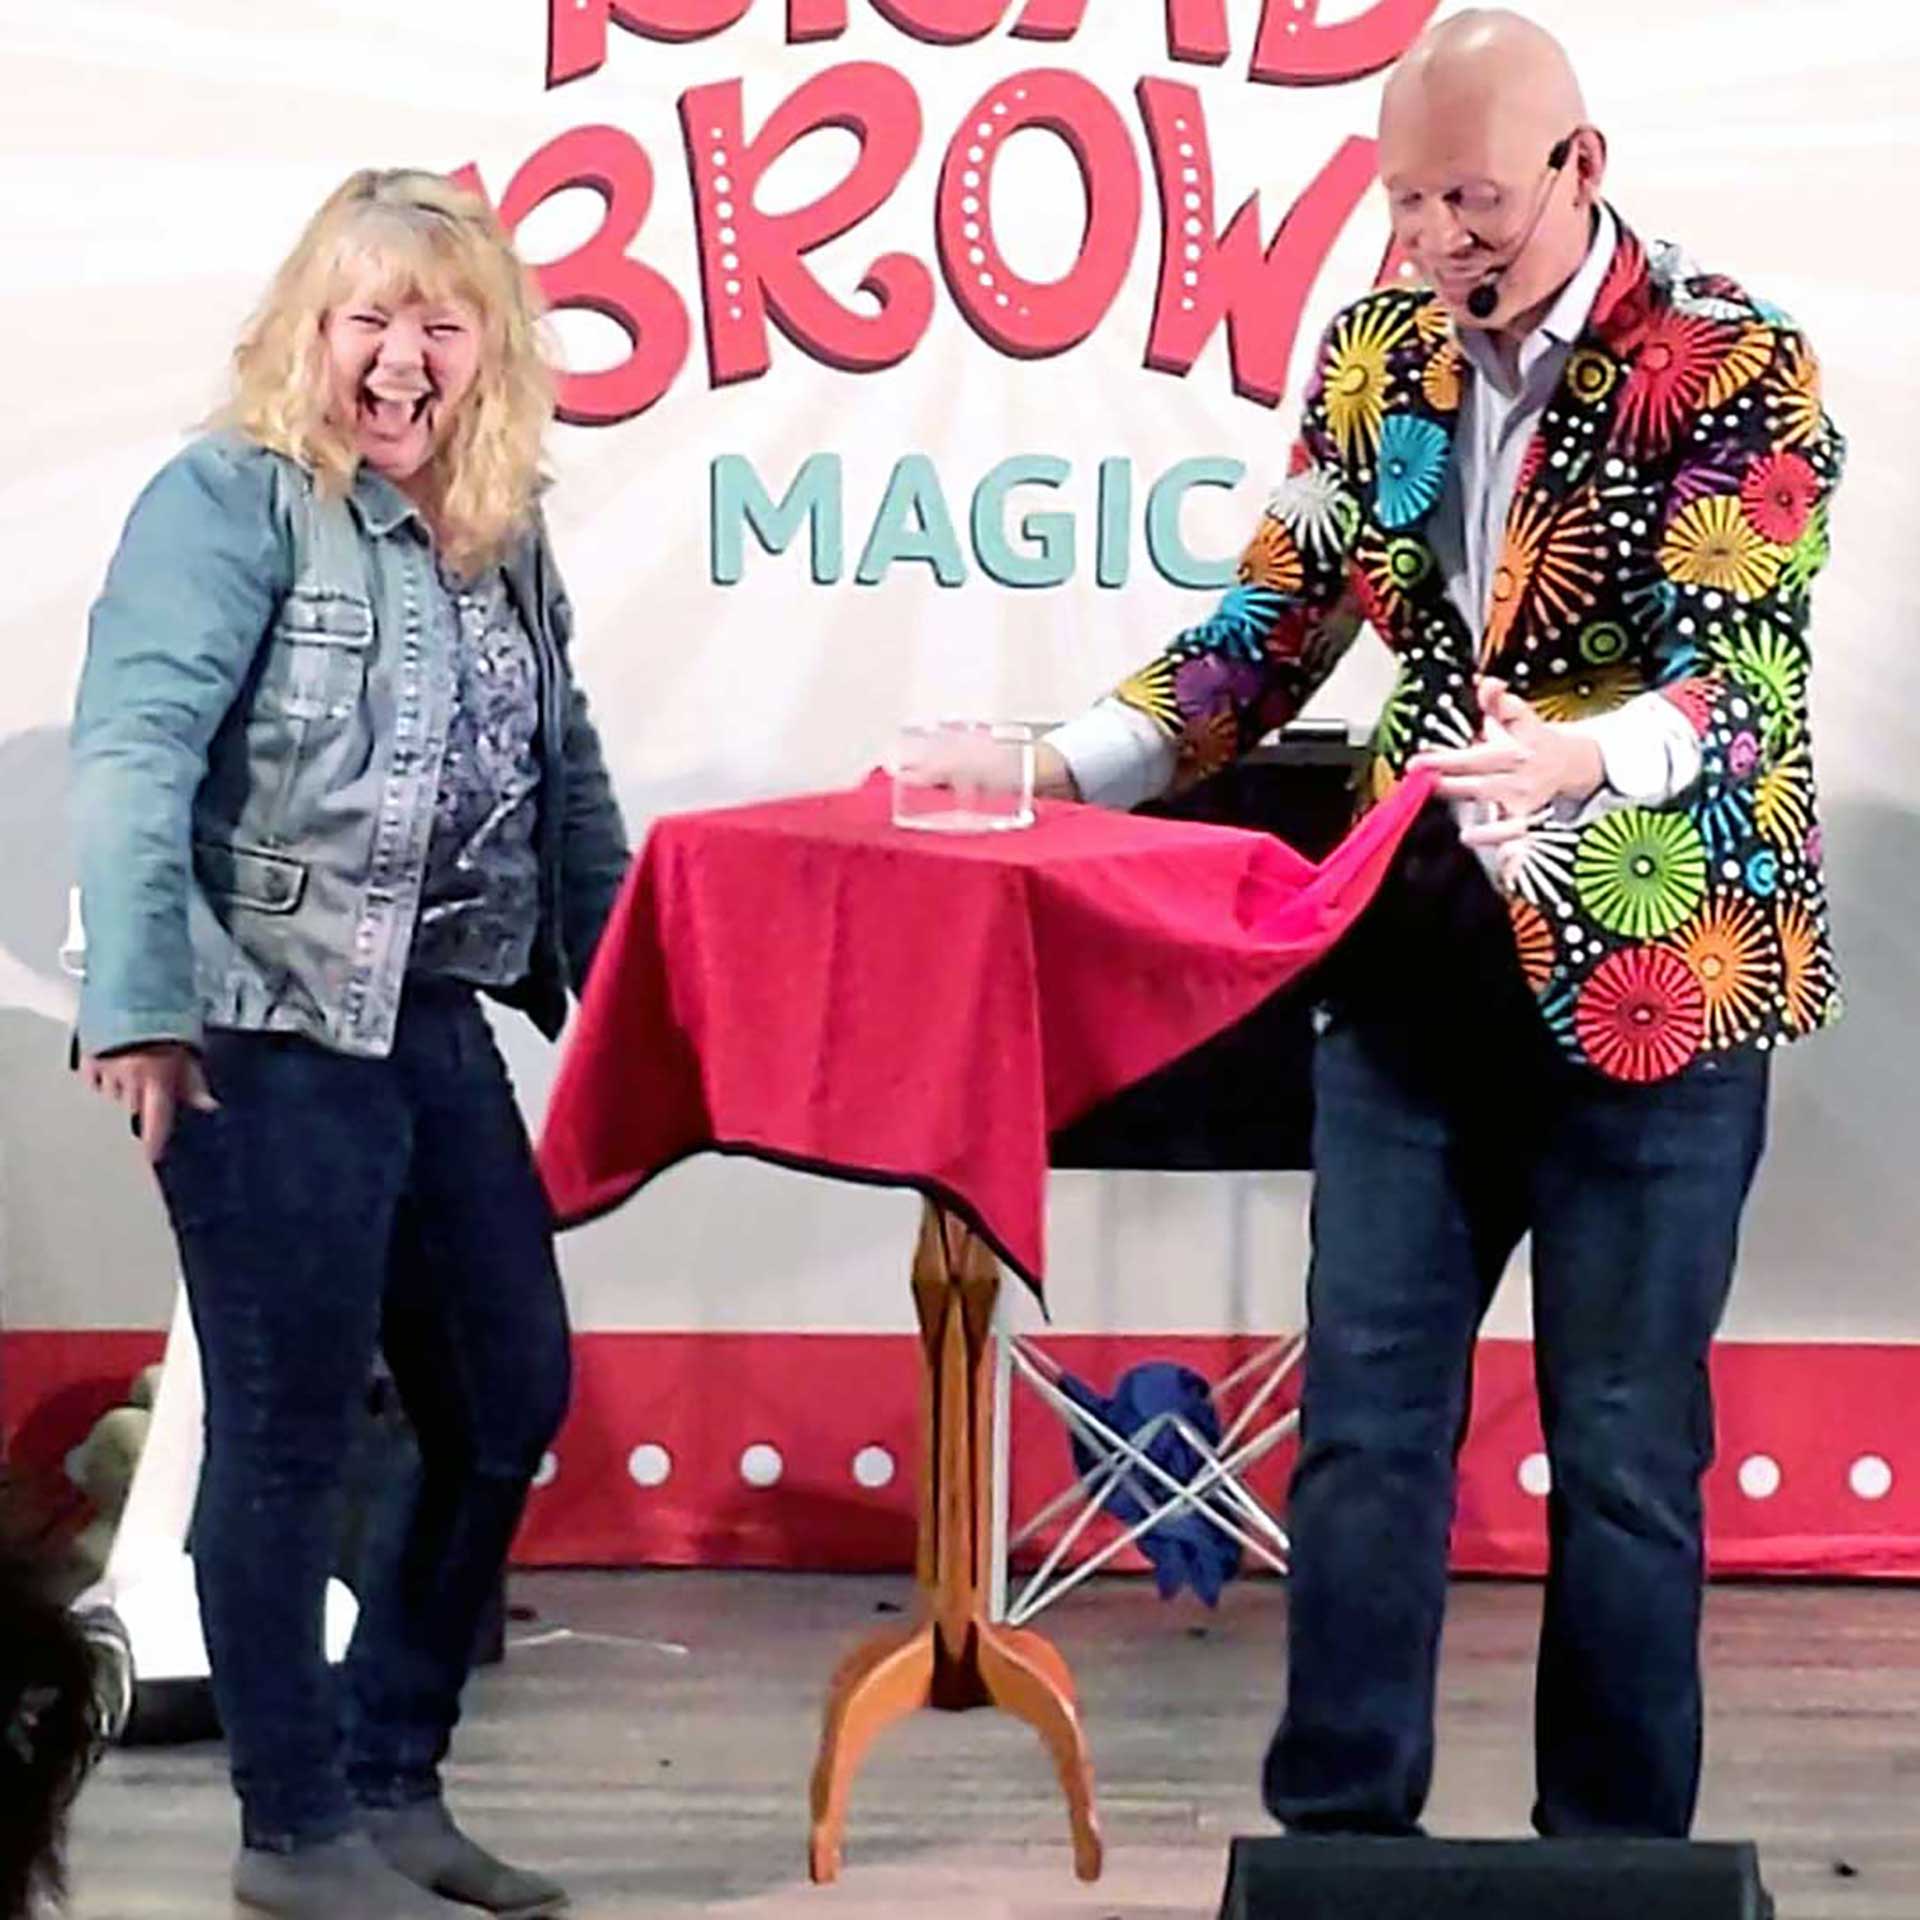 Brad brown comedy magic show